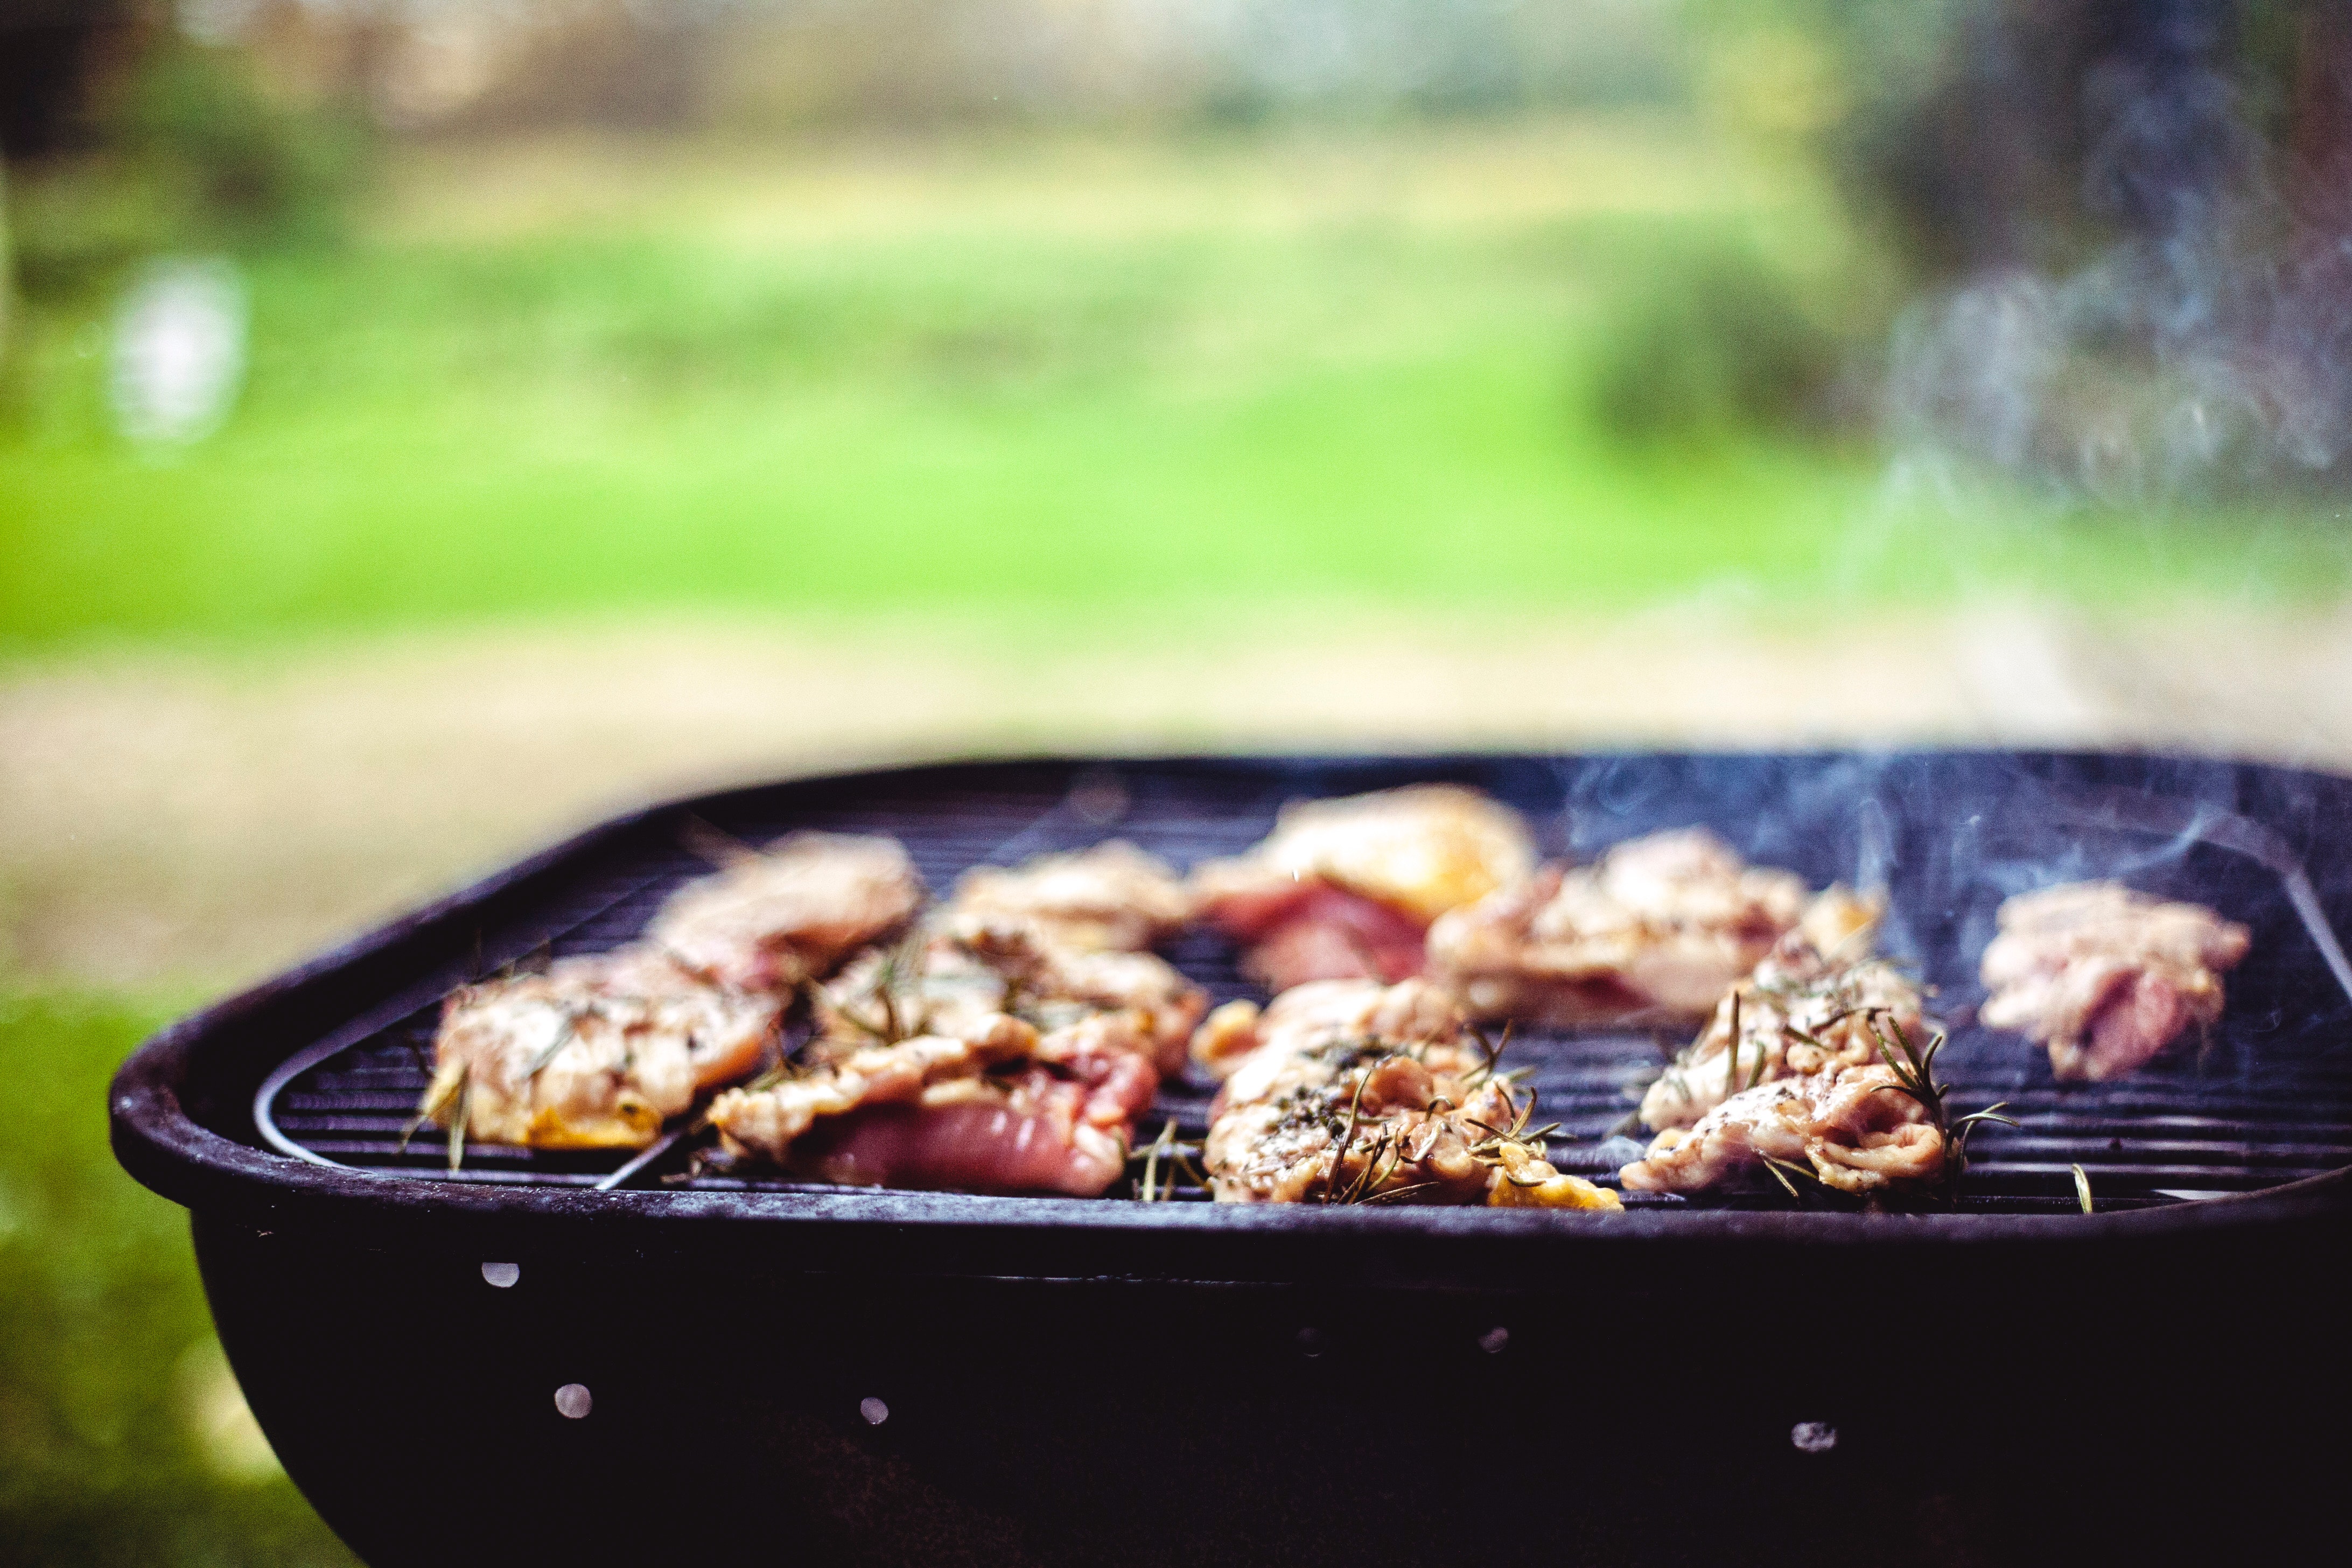 Zdrowe grillowanie latem: Jak wybierać i przygotowywać potrawy na grillu?